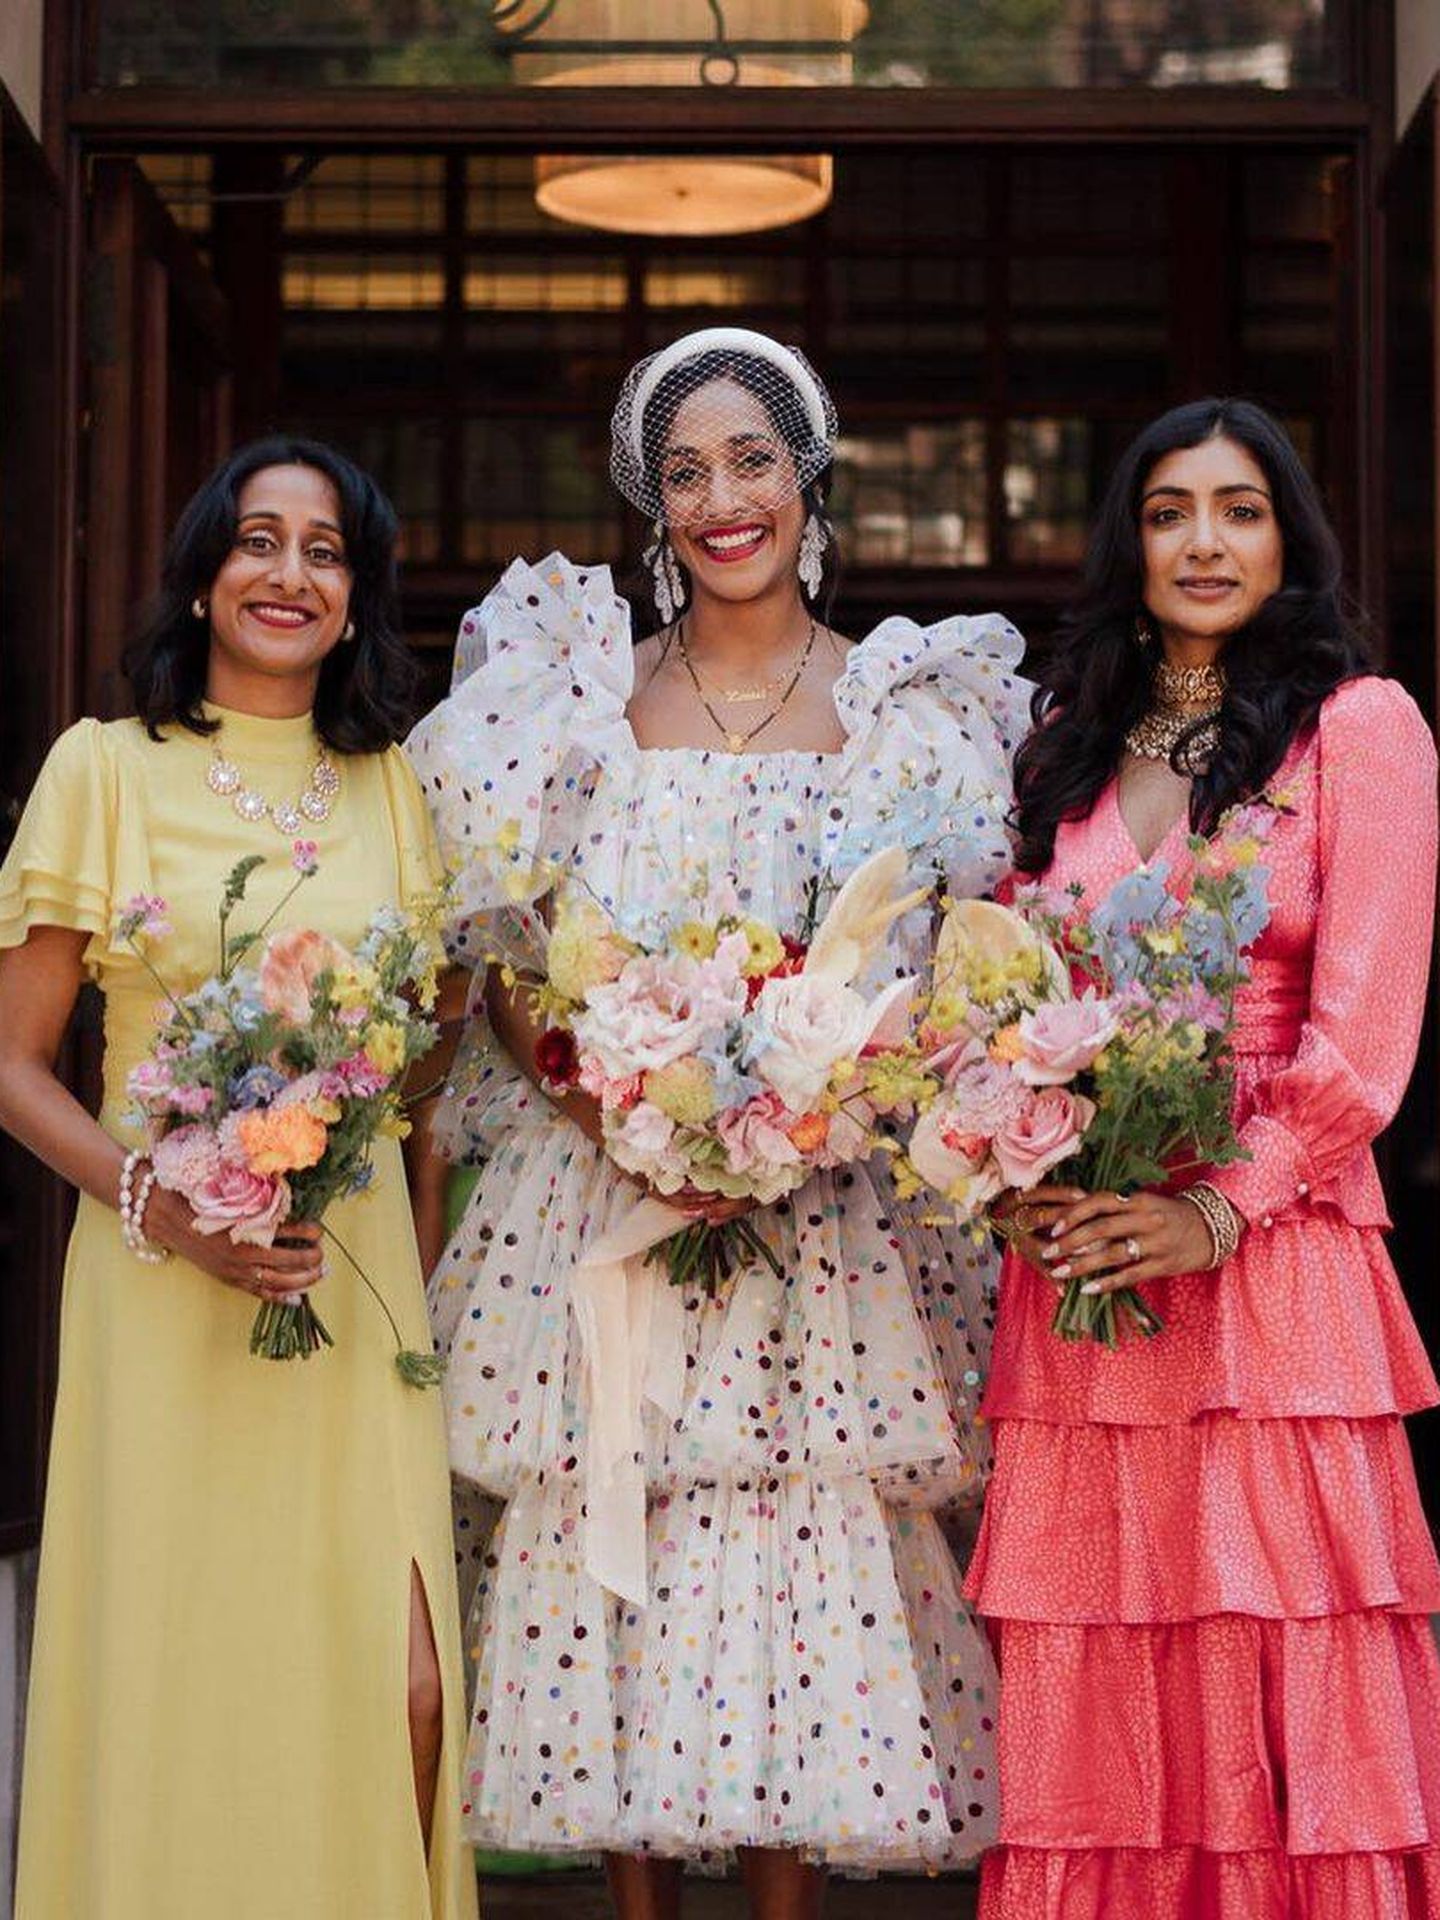 la diseñadora junto a su familia el día de su boda a todo color. (Instagram @heartzeena)